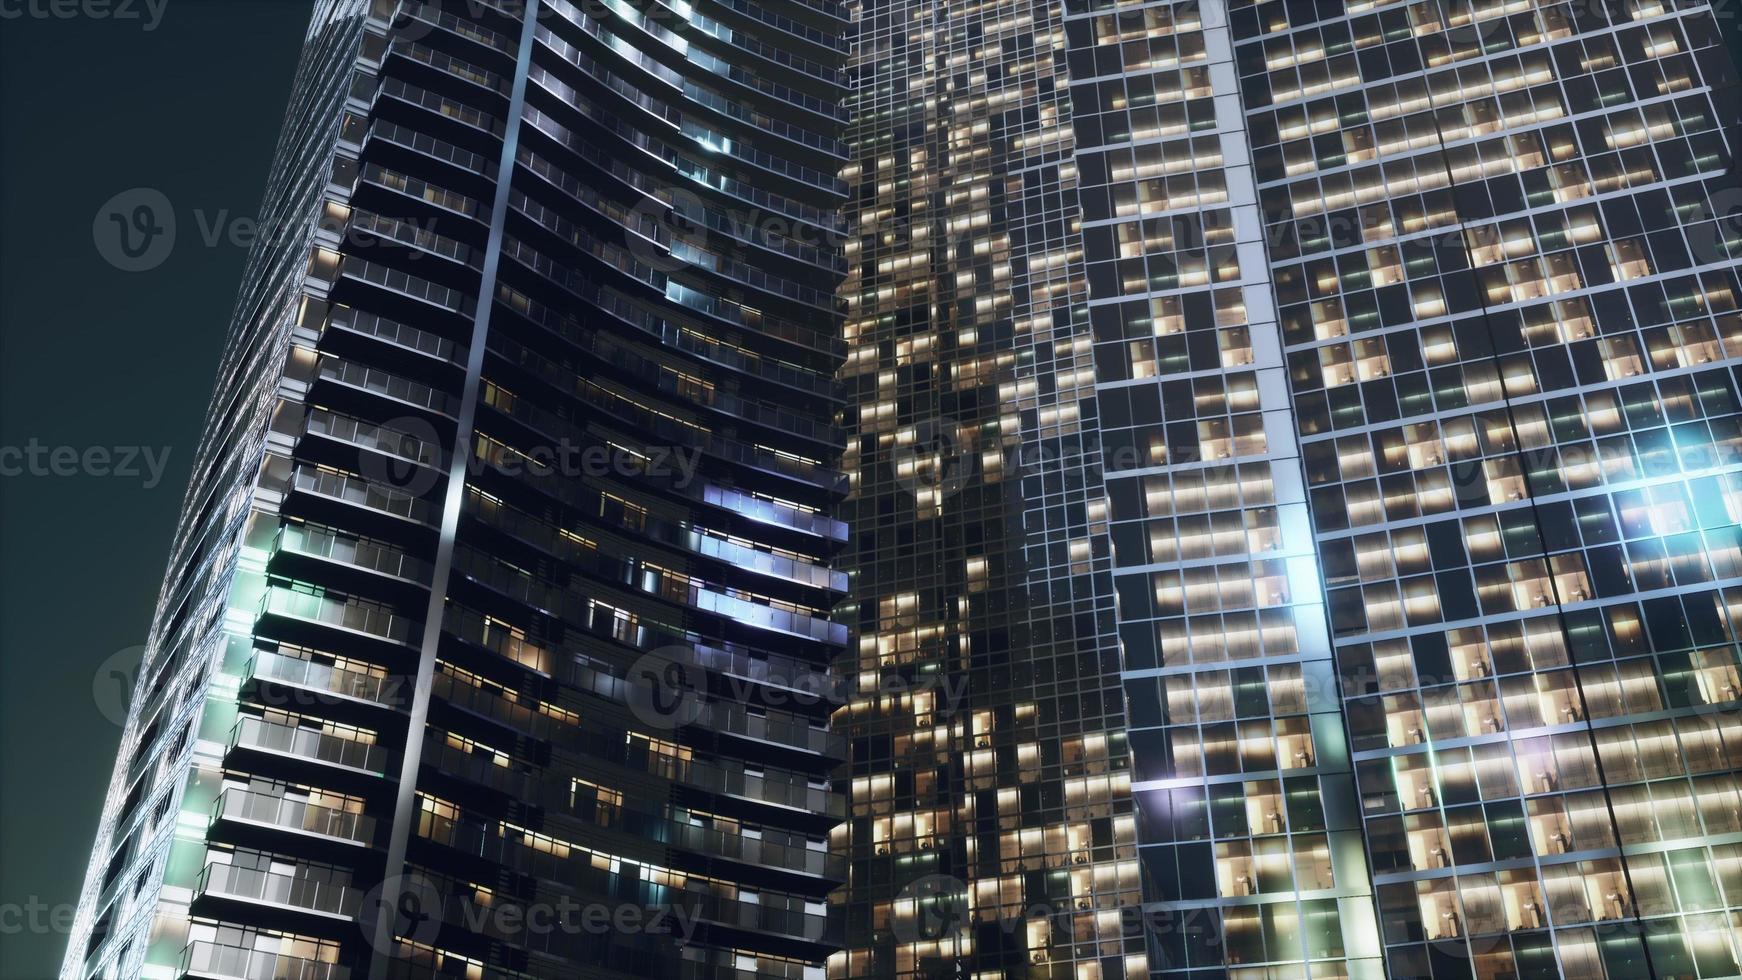 architettura notturna di grattacieli con facciata in vetro foto